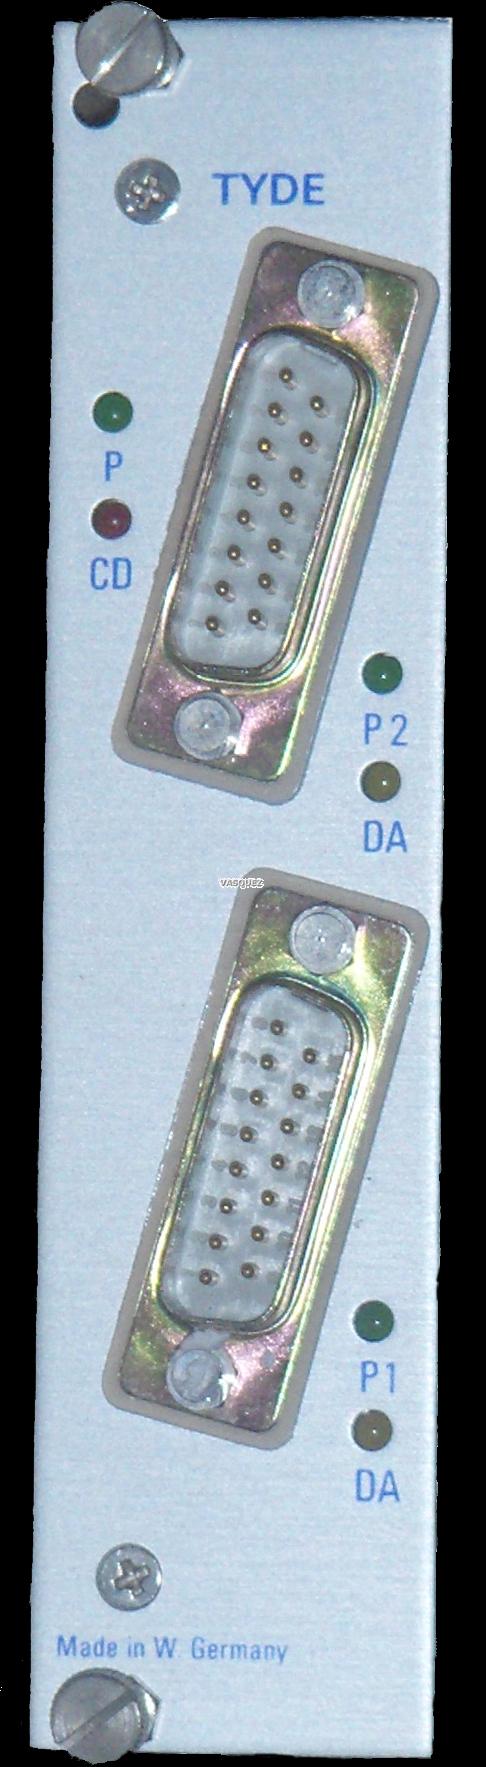 Einschubmodul TYDE ETHERNET-Twin Transmitter-Interface